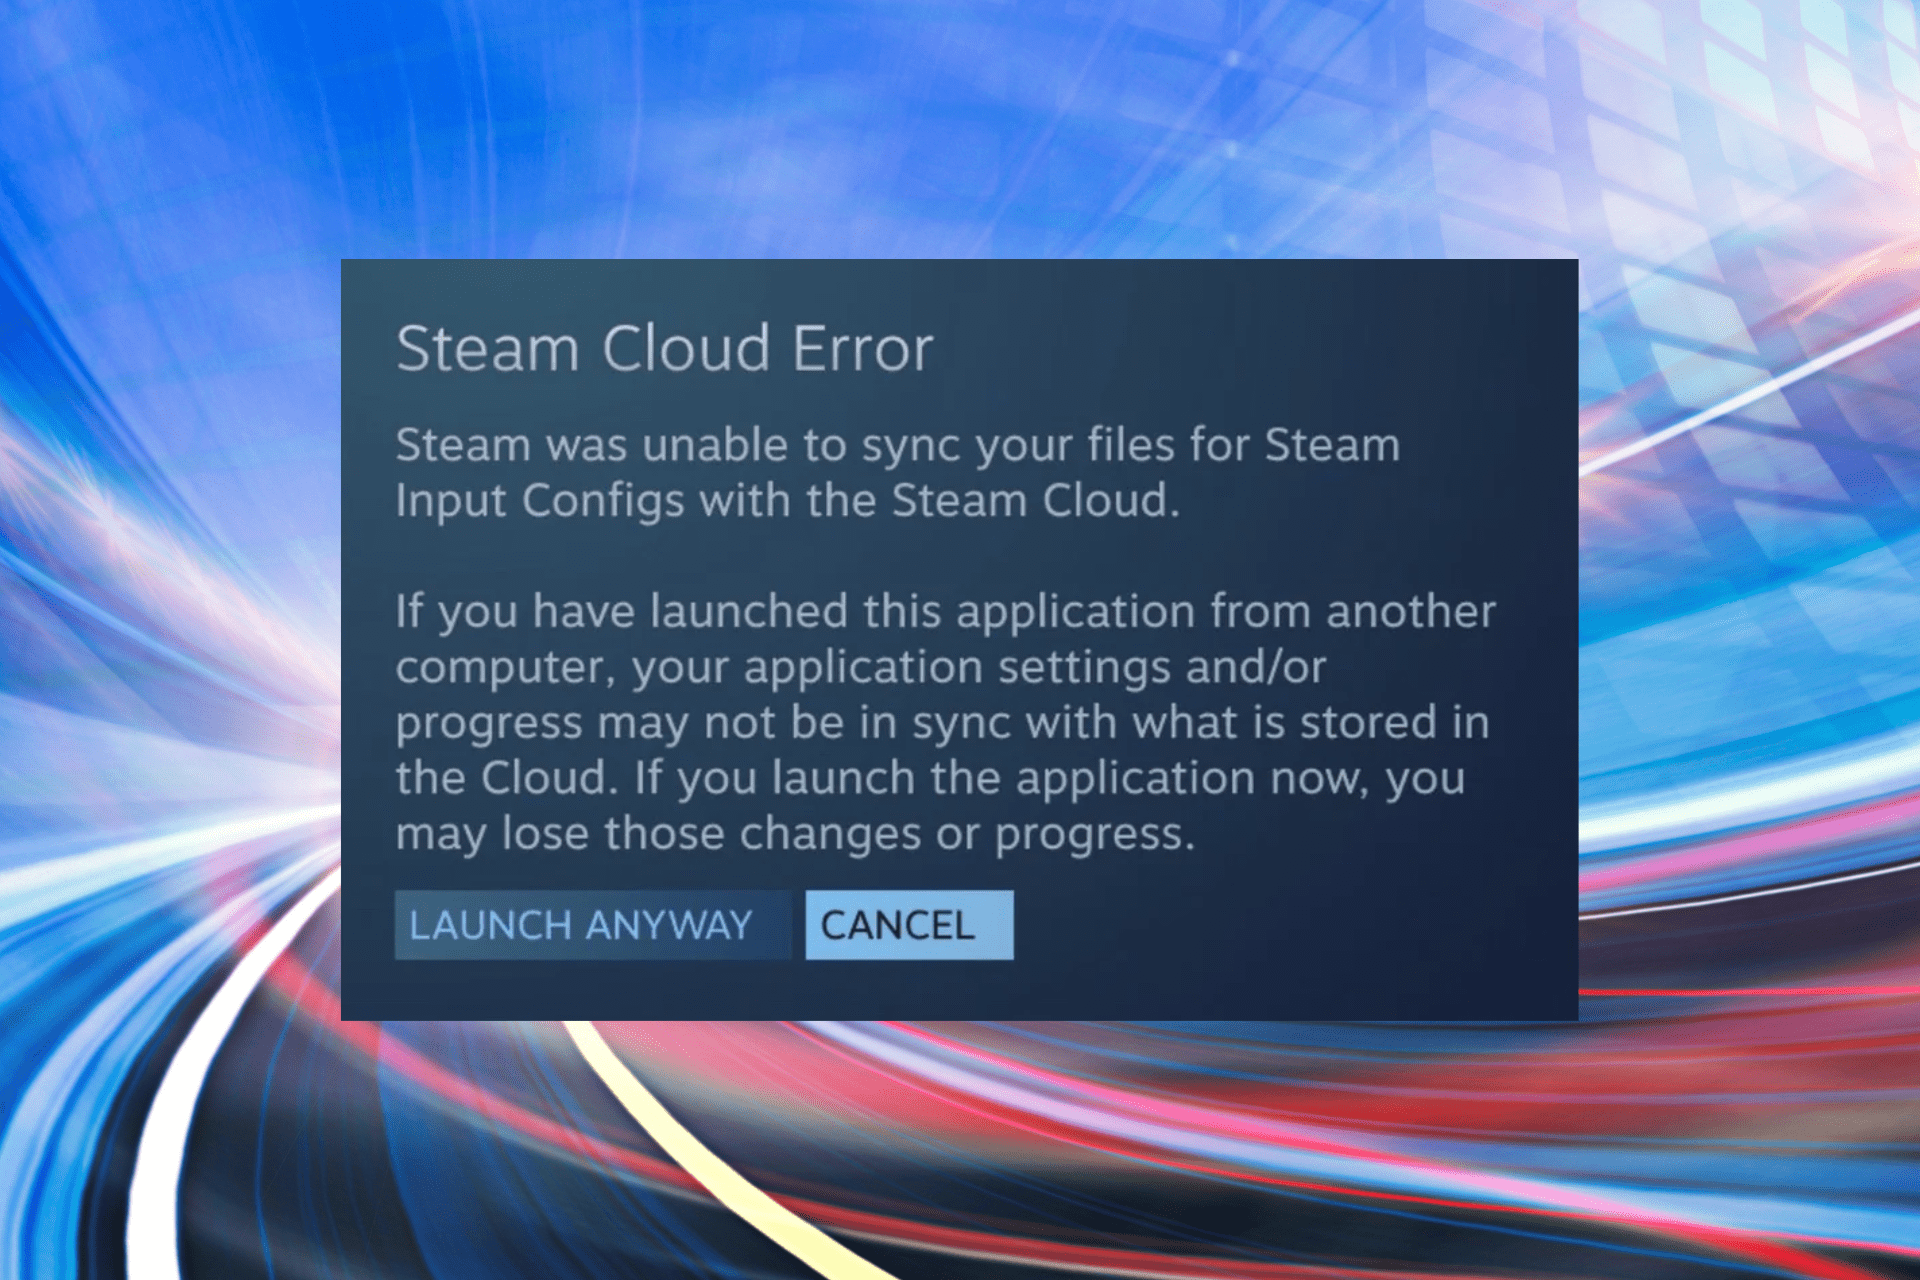 Fix the Steam Cloud Error